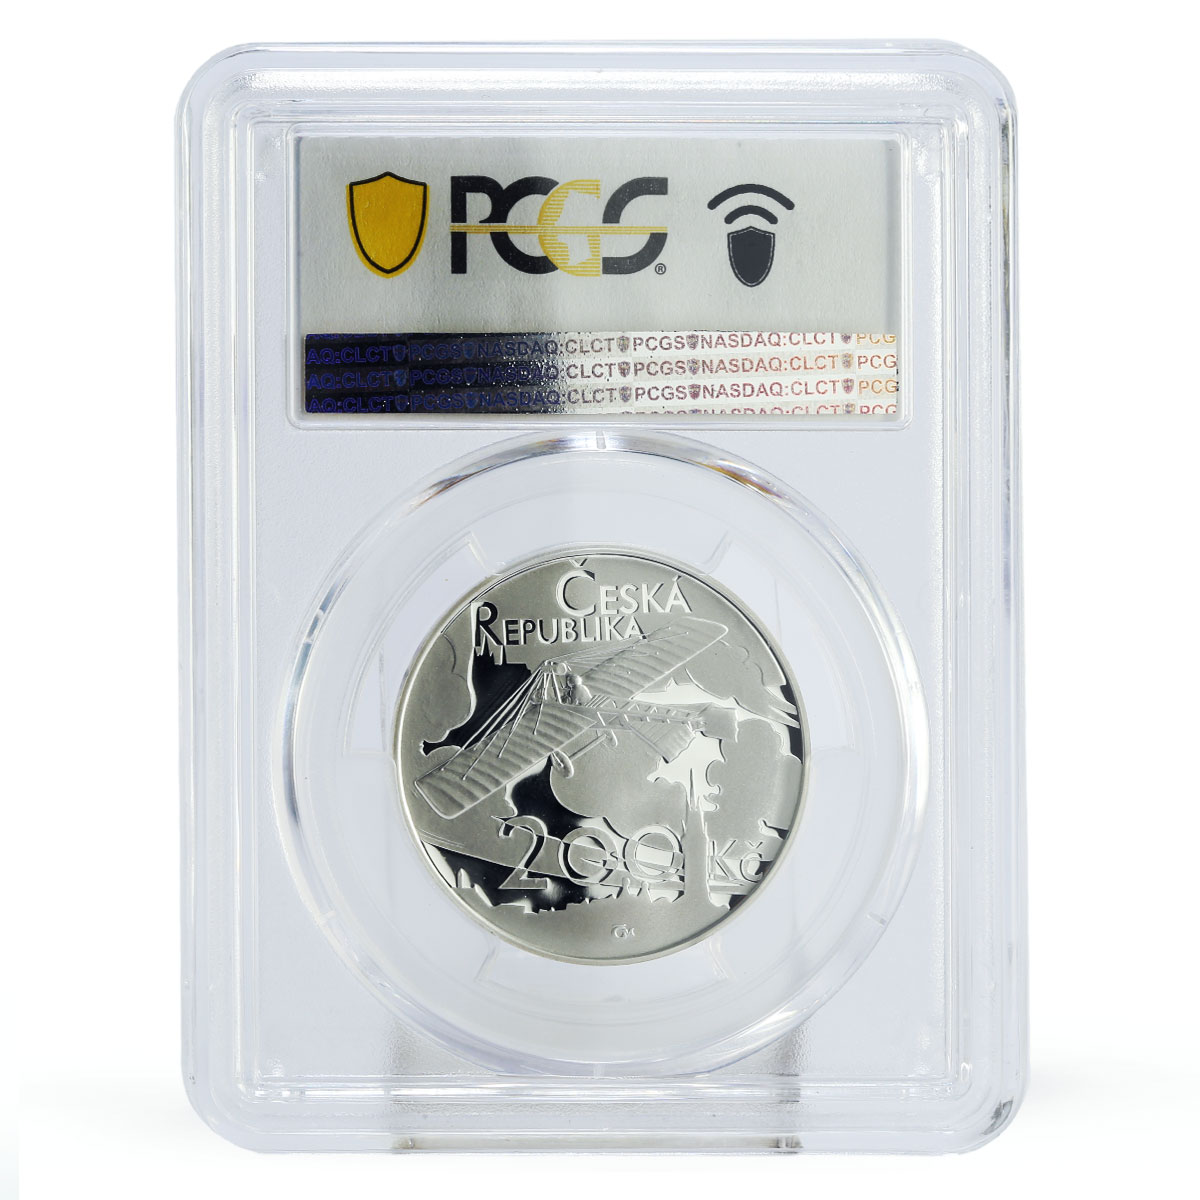 Czech Republic 200 korun Jan Kaspar Plane Flight PR70 PCGS silver coin 2011